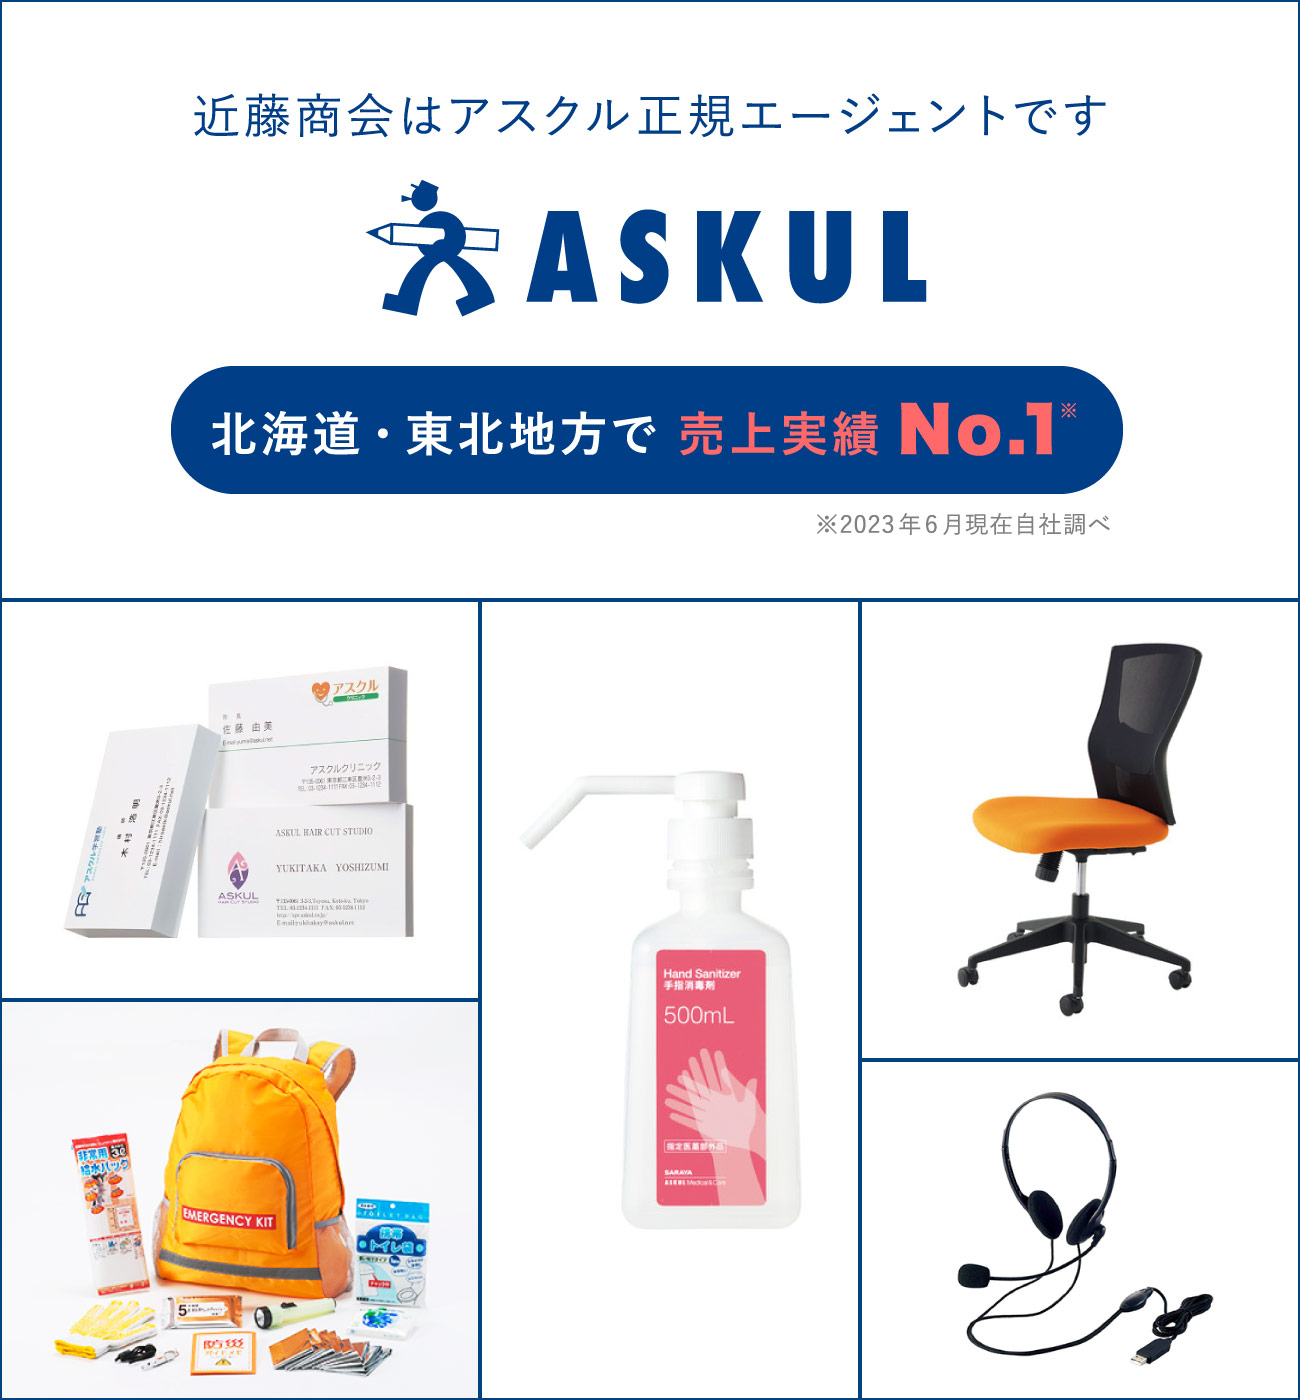 近藤商会はアスクル正規販売店です。 ASKUL 北海道・東北地方で売上実勢No.1※2020年7月現在自社調べ